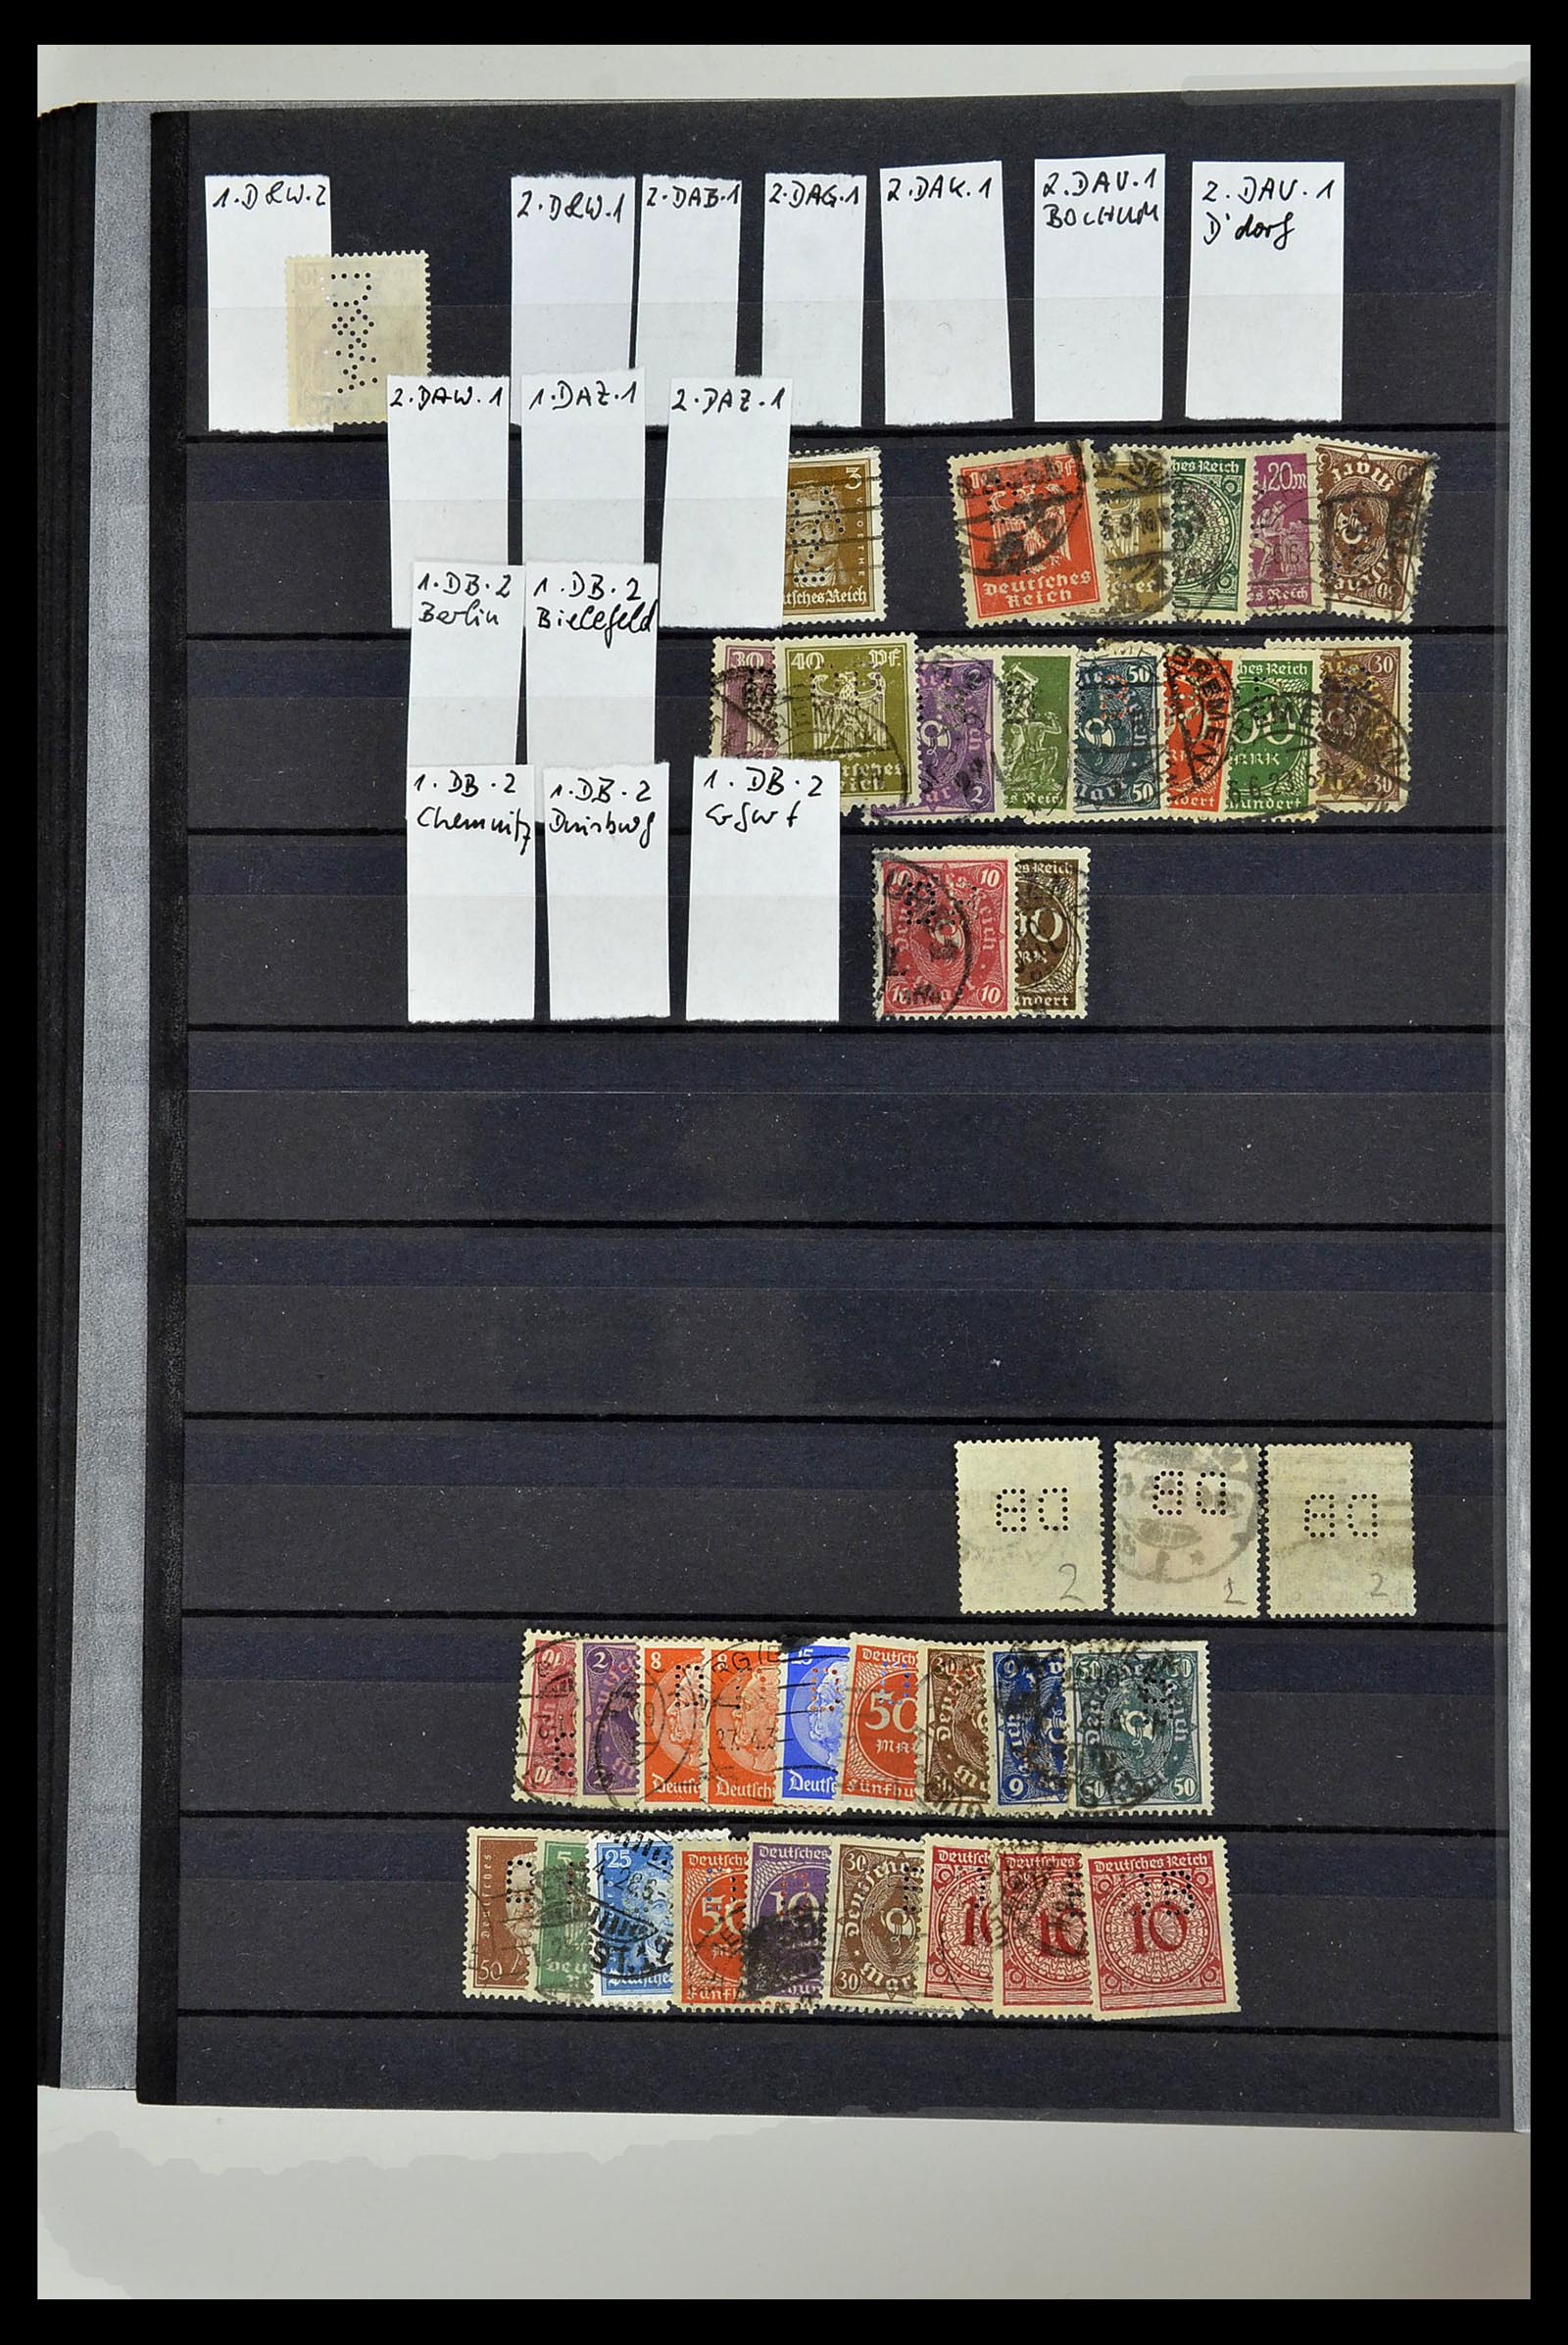 34432 093 - Stamp Collection 34432 German Reich perfins 1900-1933.